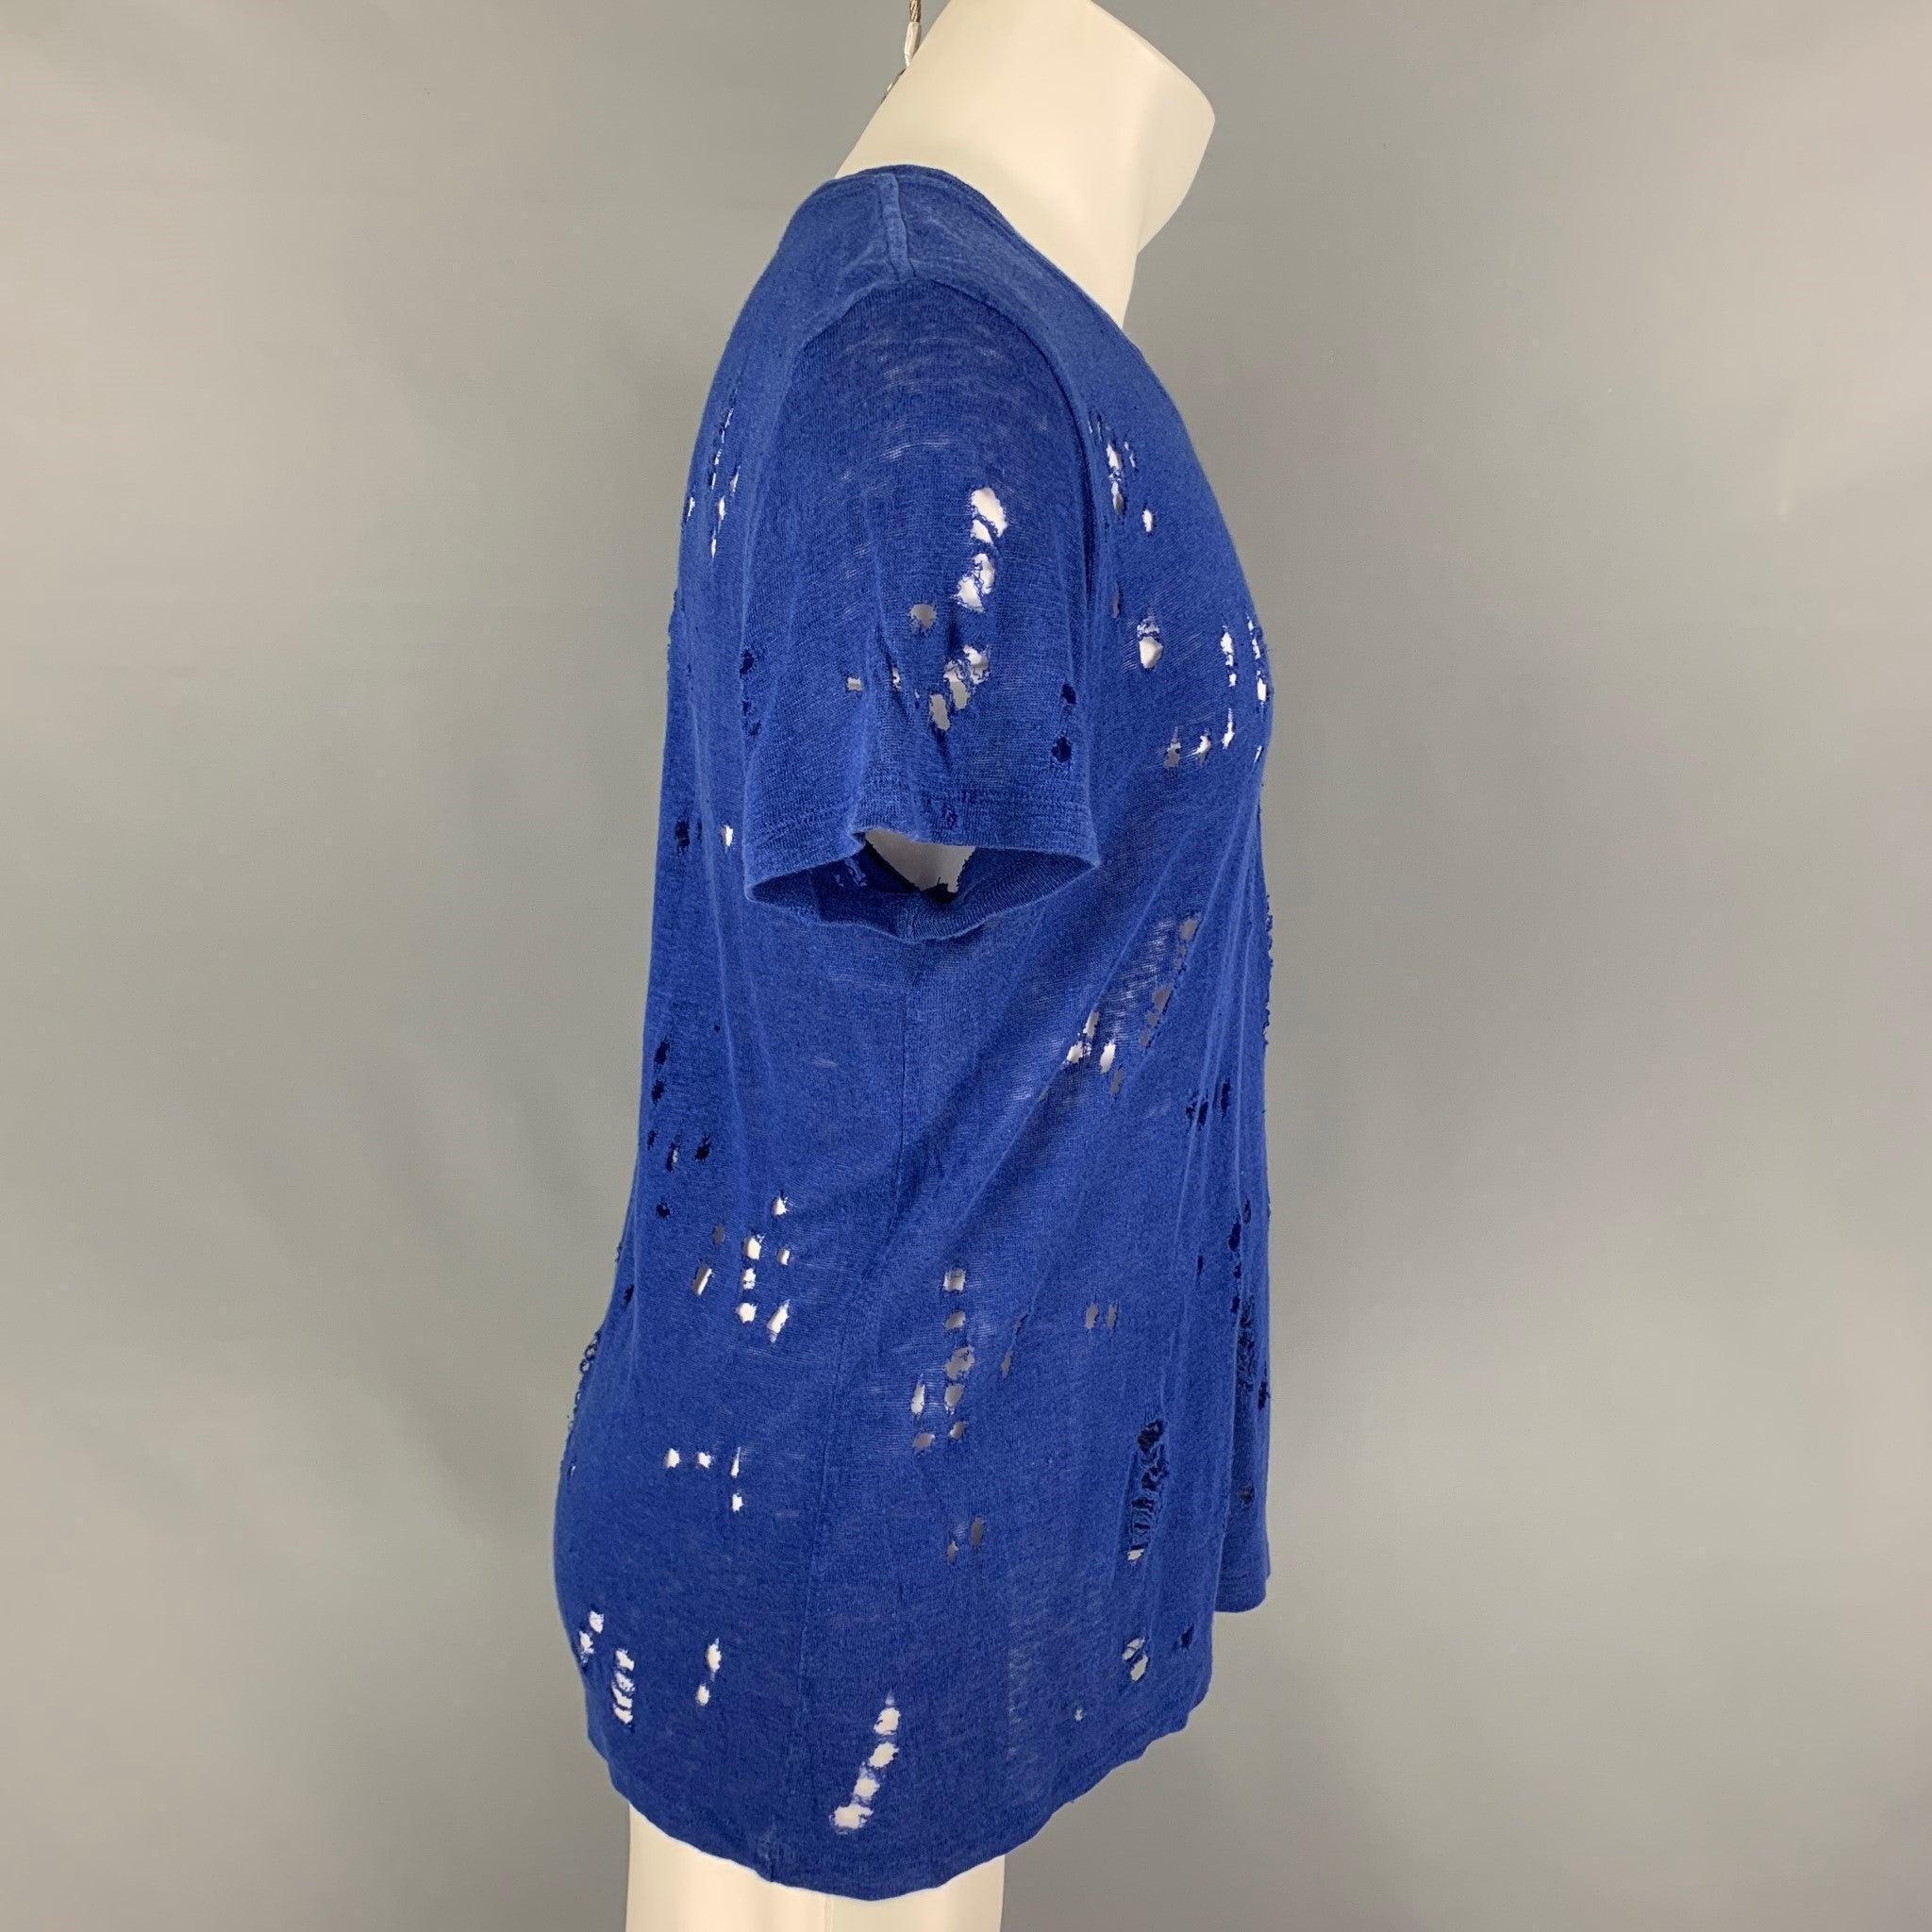 Le t-shirt 'Clay' d'Iro se présente dans un lin bleu royal avec des détails en relief et une encolure ras du cou. Fabriqué au Portugal.
Très bon état d'origine.  

Marqué :   S 

Mesures : 
 
Épaule : 18 pouces  Poitrine : 38 pouces  Manches : 8